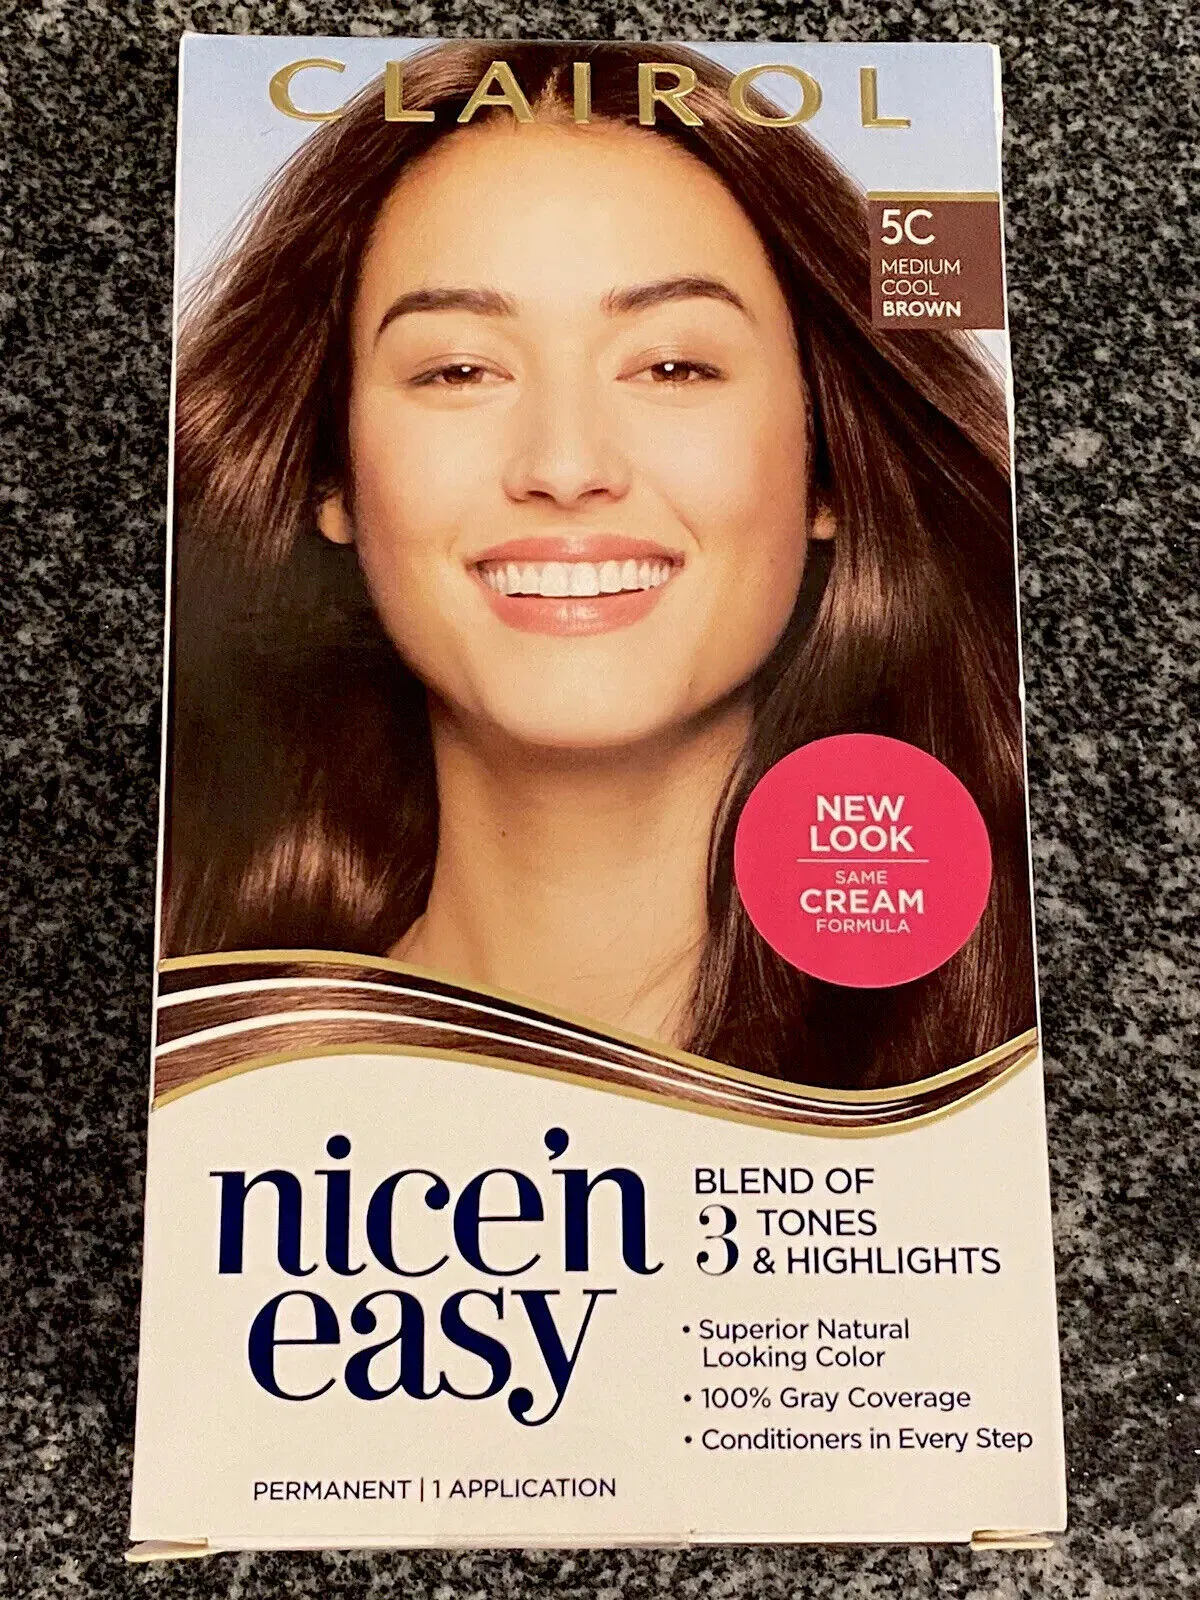 Clairol Nice'n Easy Permanent Hair Dye Color Cream, 5C Medium Cool Brown